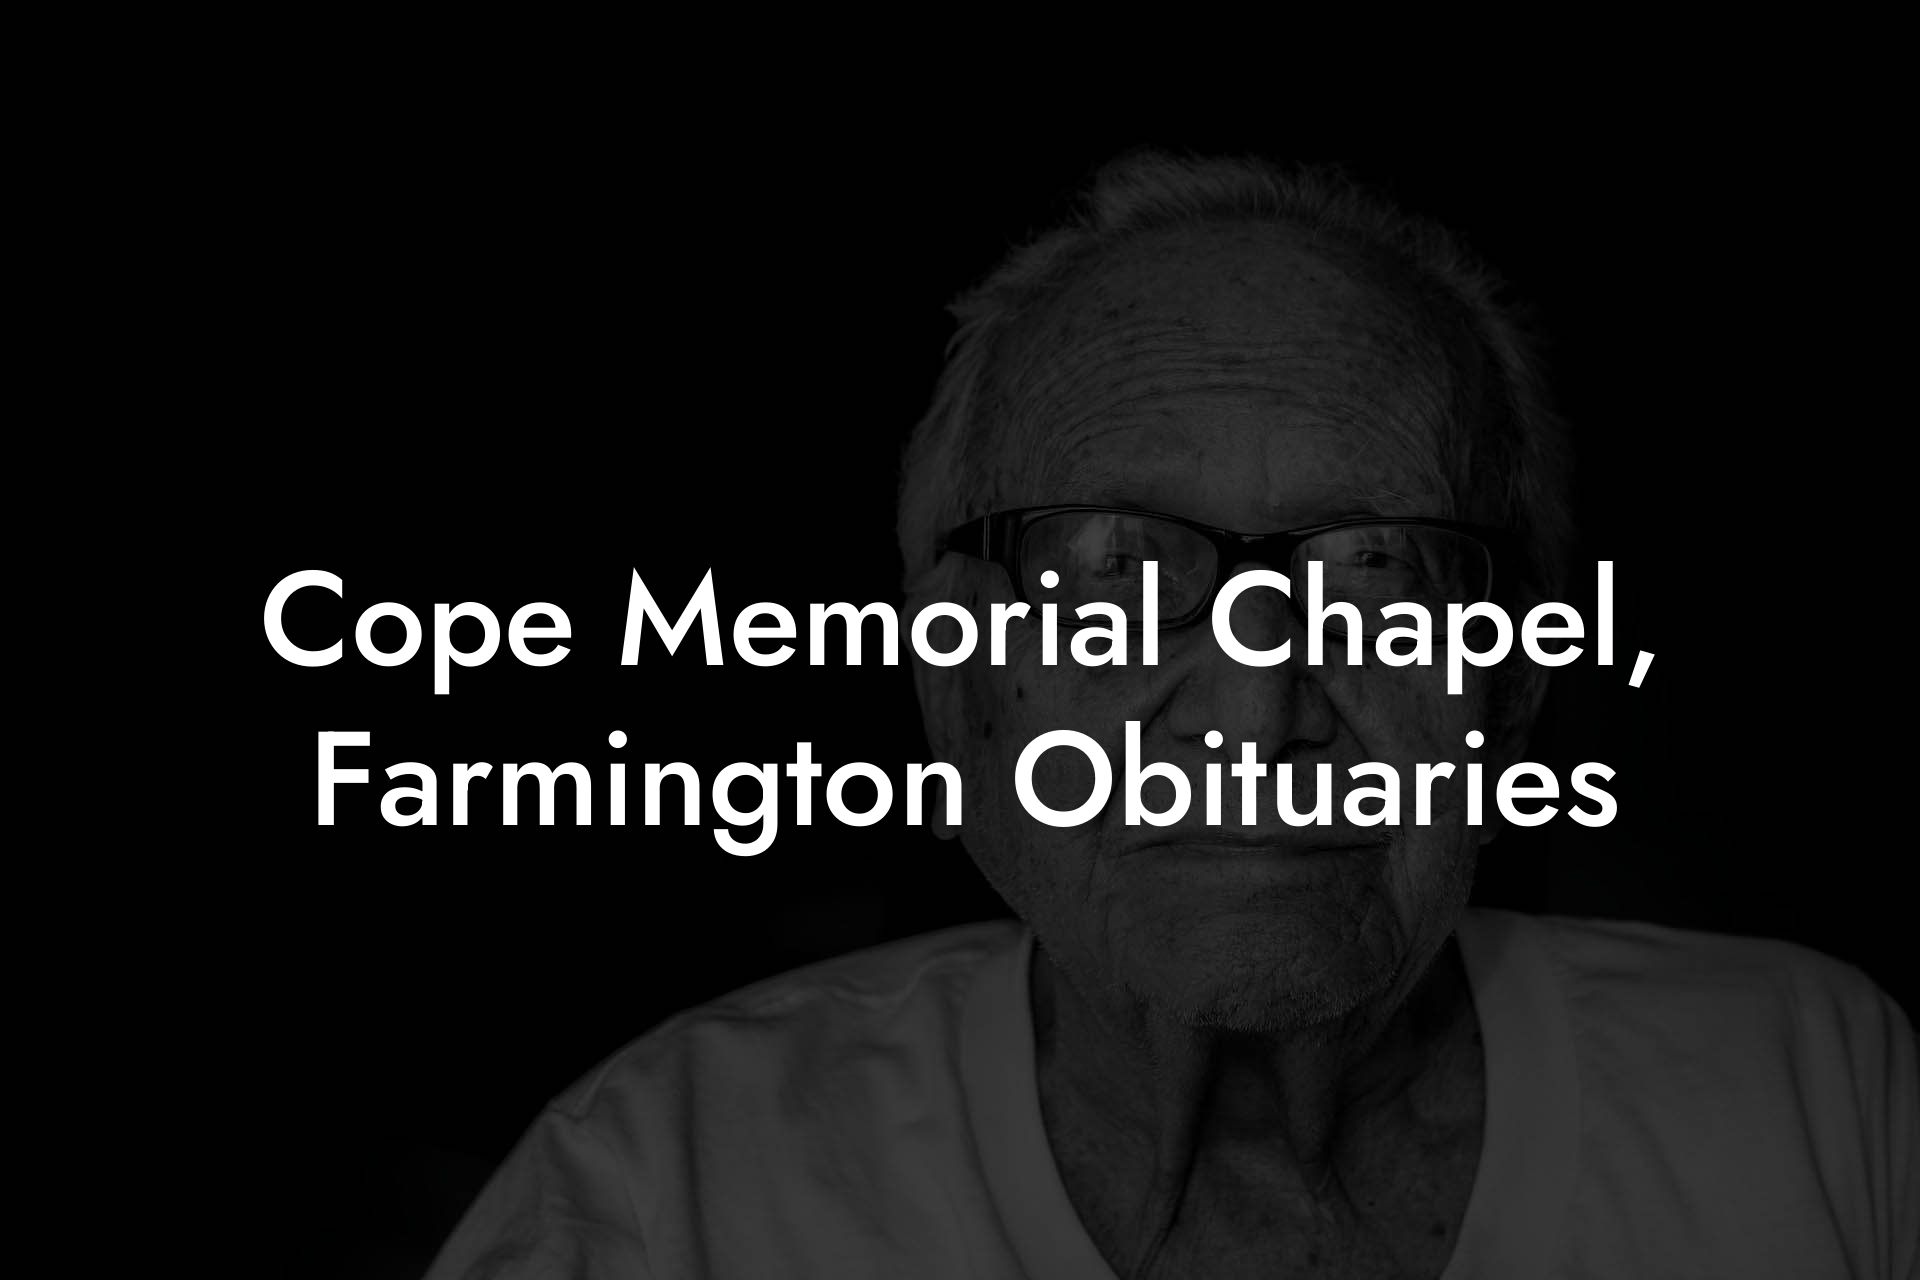 Cope Memorial Chapel Farmington Obituaries